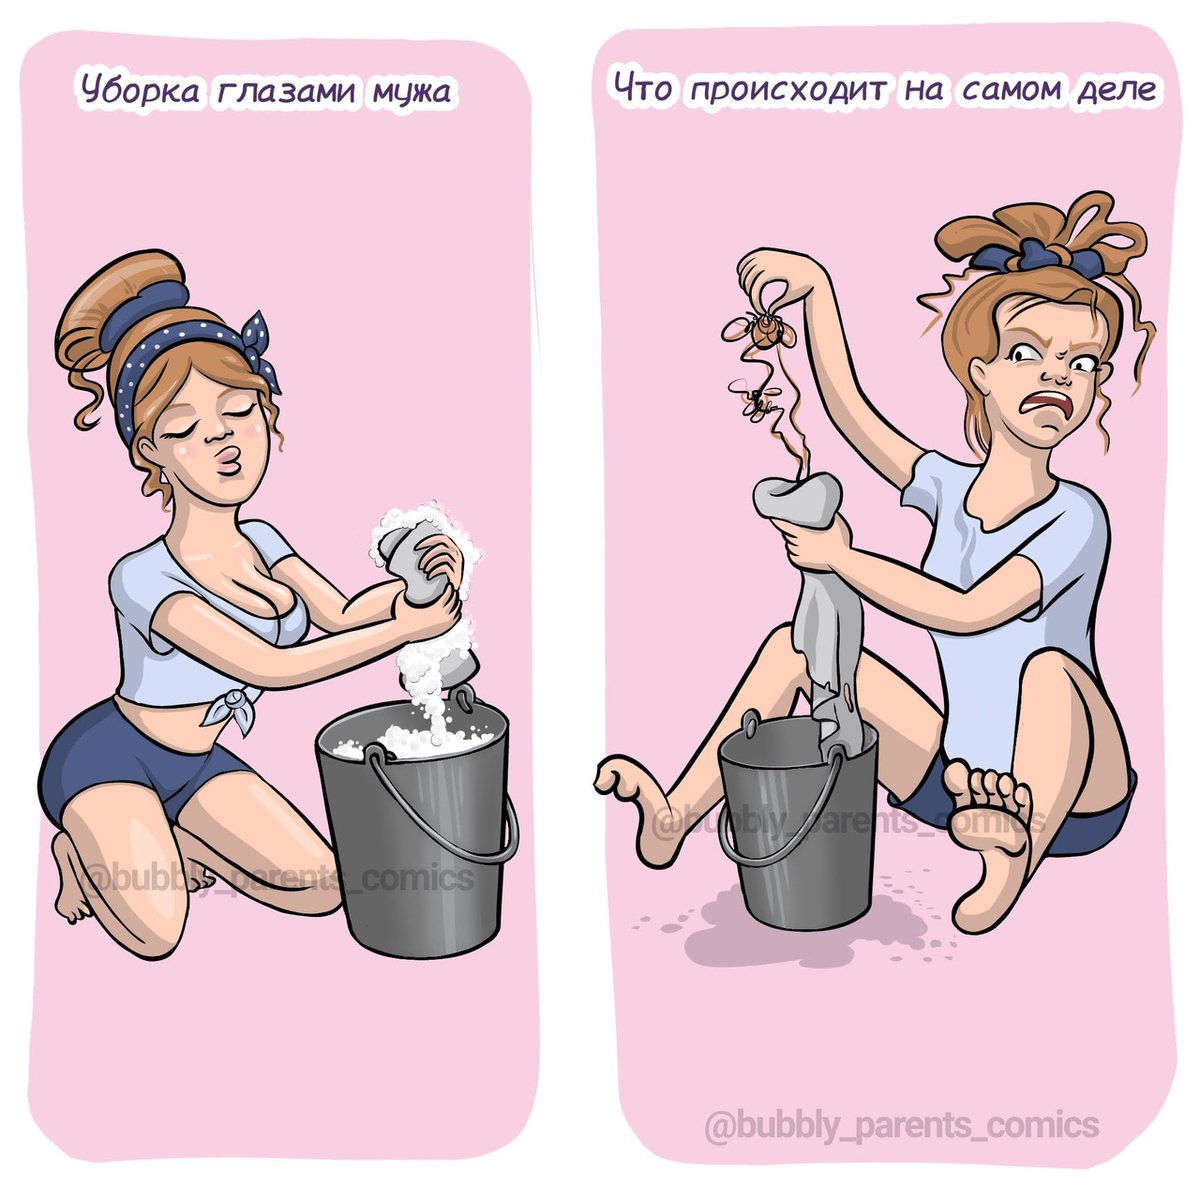 15 смешных комиксов от художницы из Екатеринбурга, которая делится своим «щщастьем материнства» в картинках 52